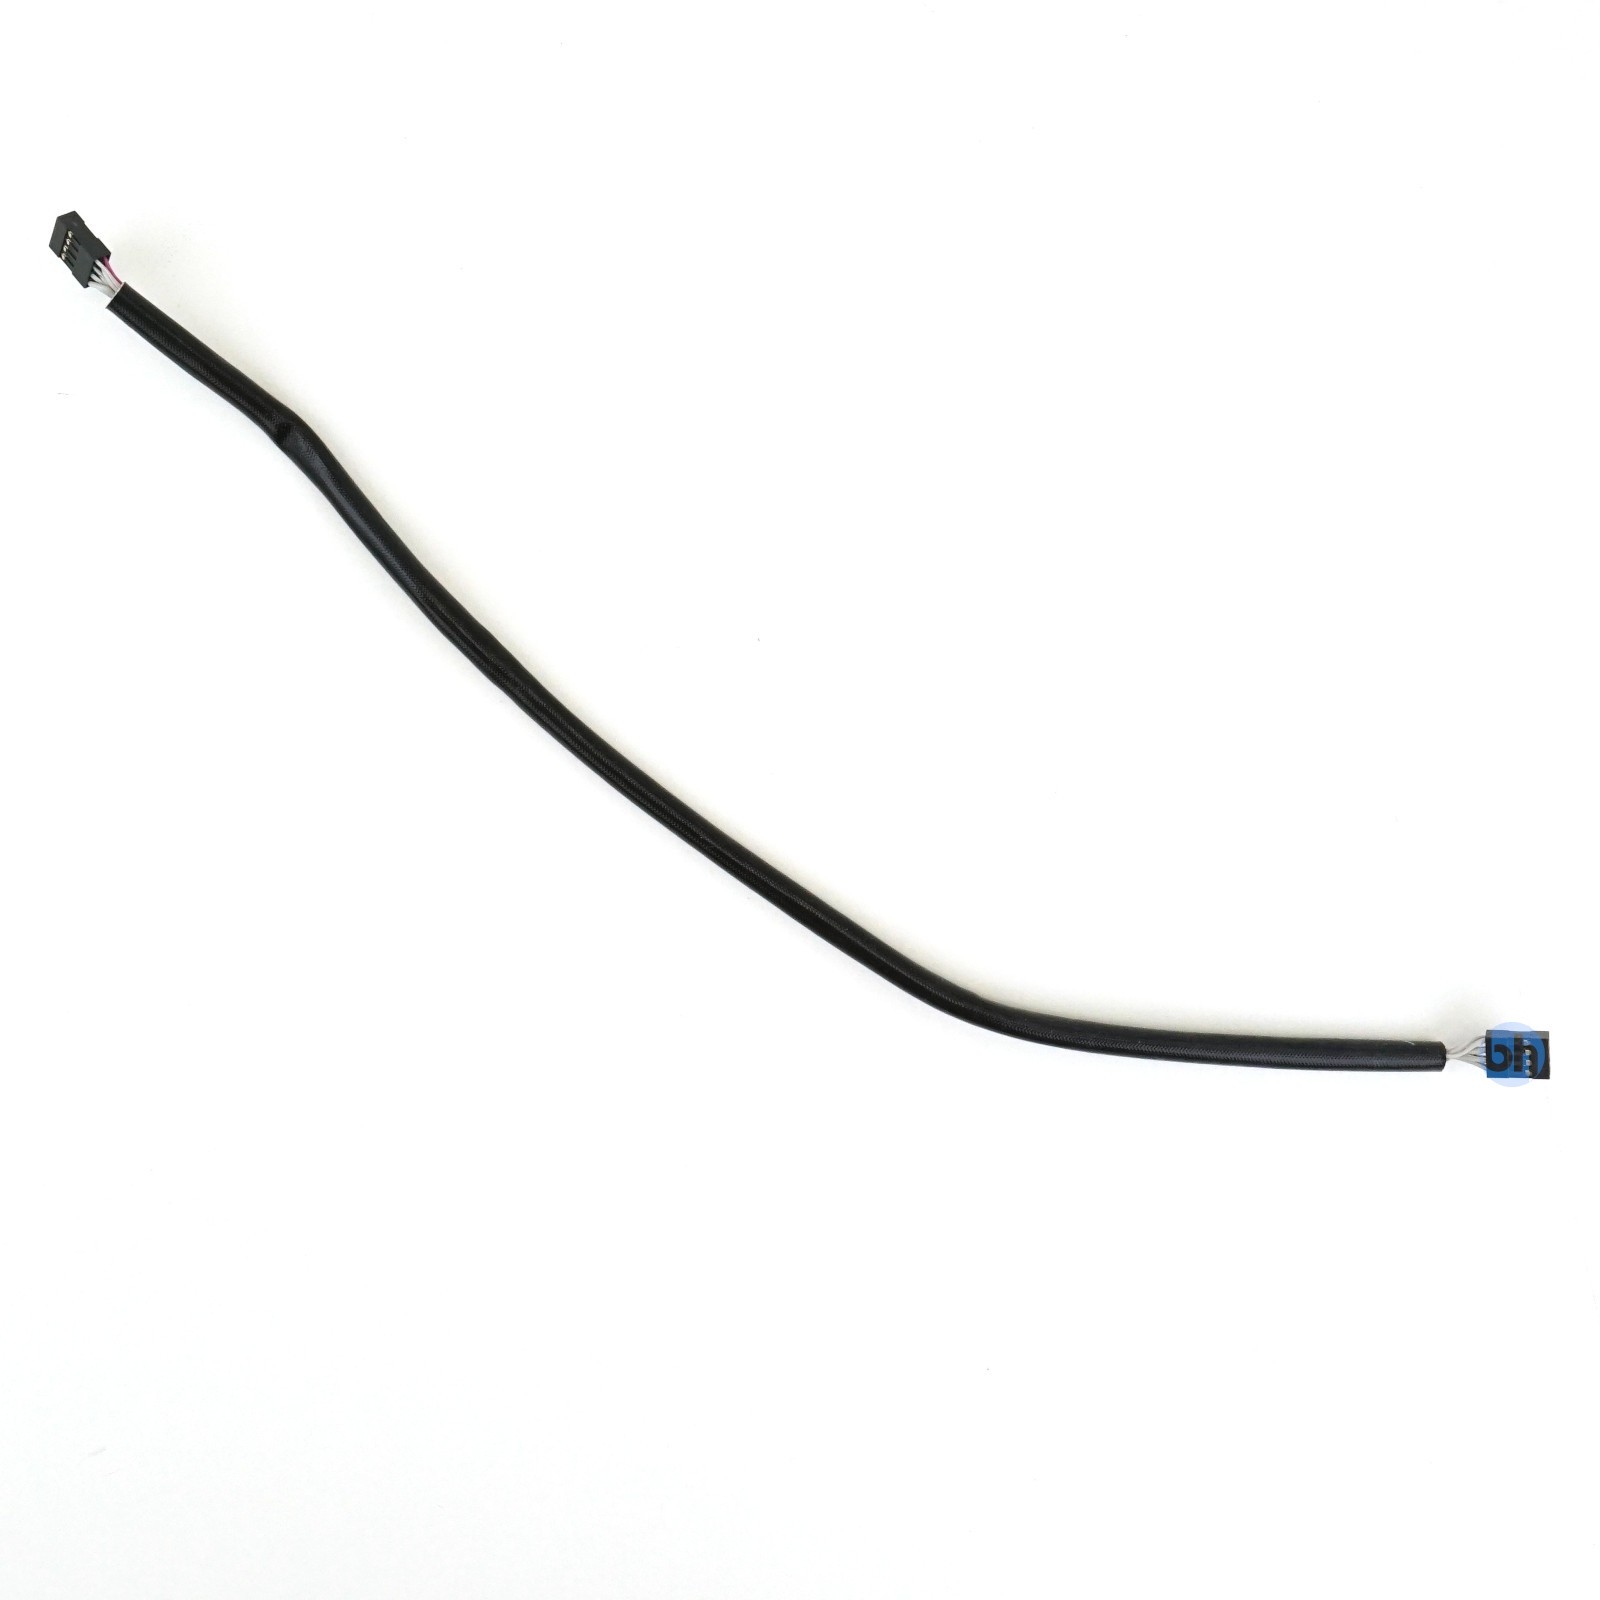 SuperMicro CBL-0157L-01 8-Pin to 8-Pin SGPIO Cable 15"